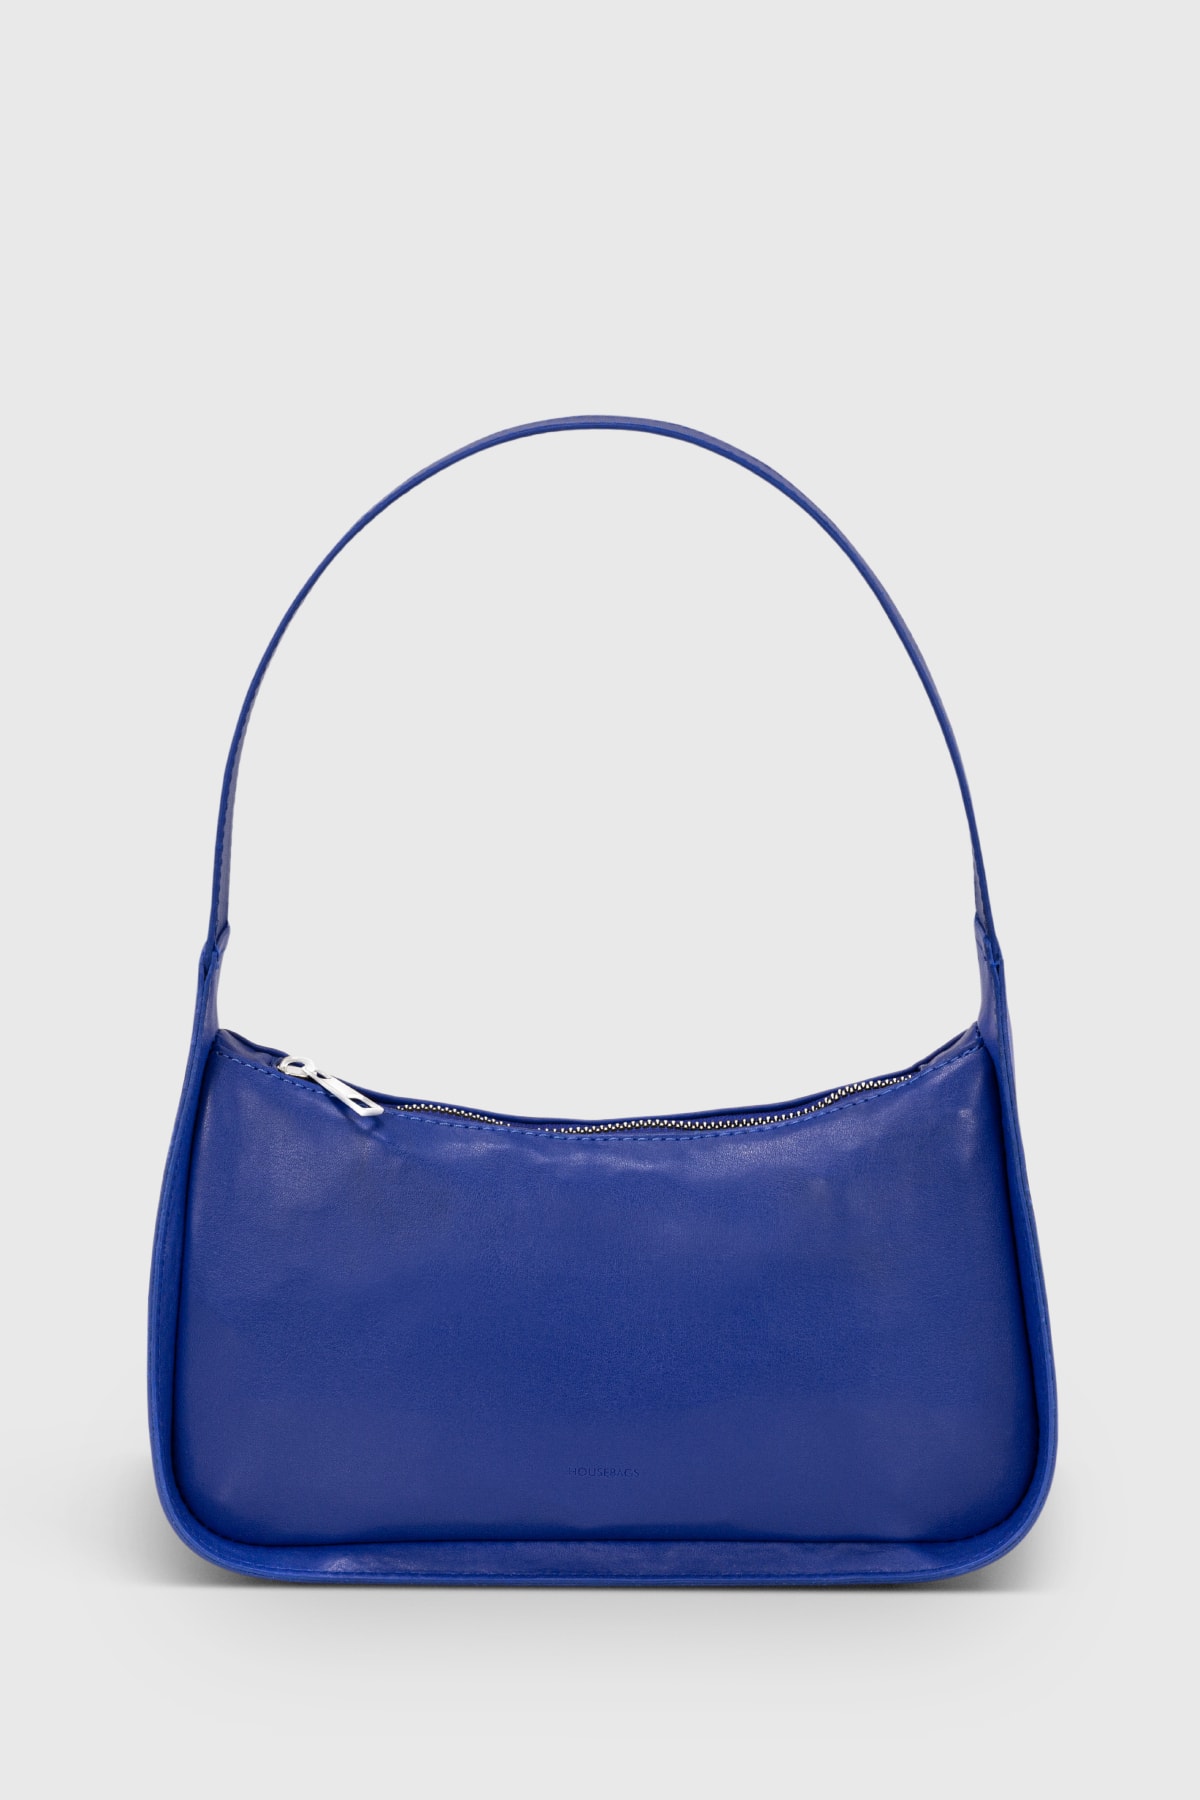 Housebags Kadın Saks Mavi Baguette Çanta 214